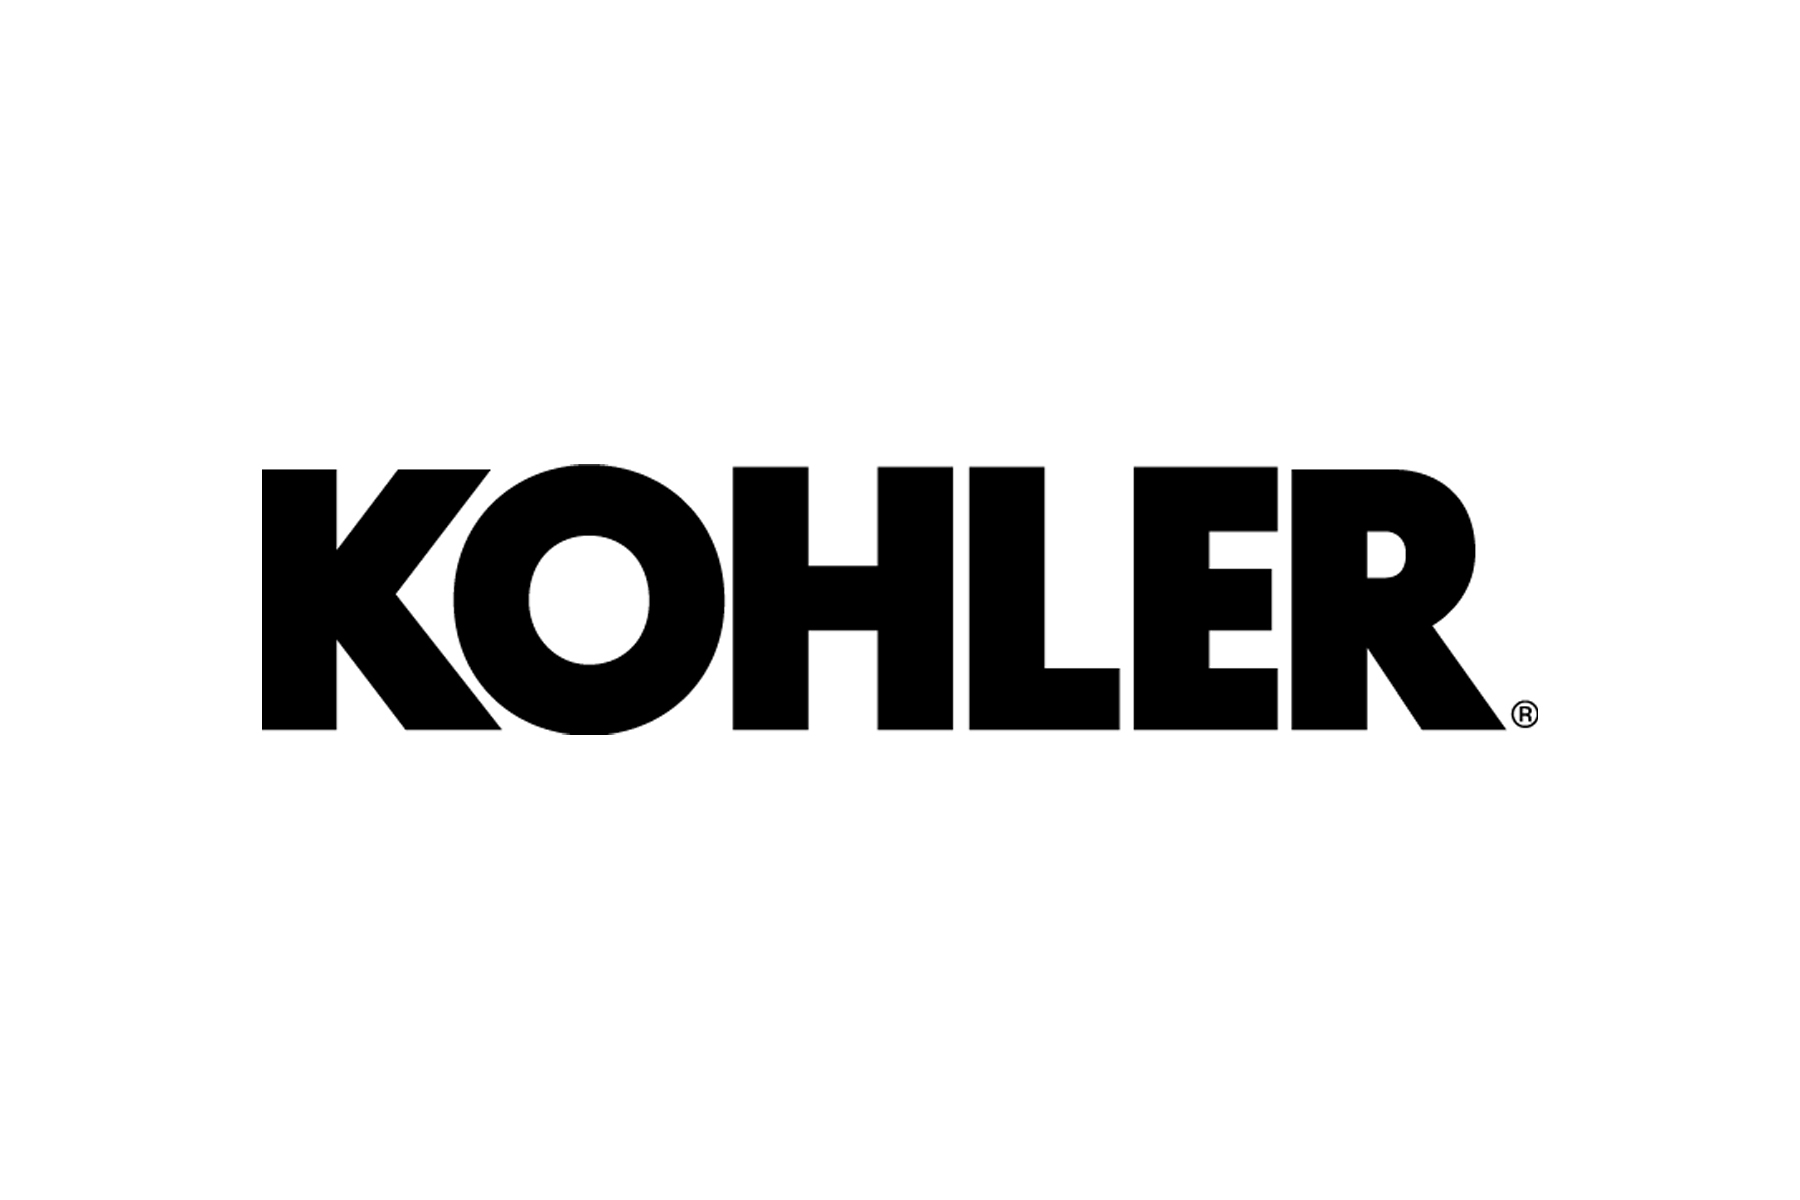 Kohler GS.jpg